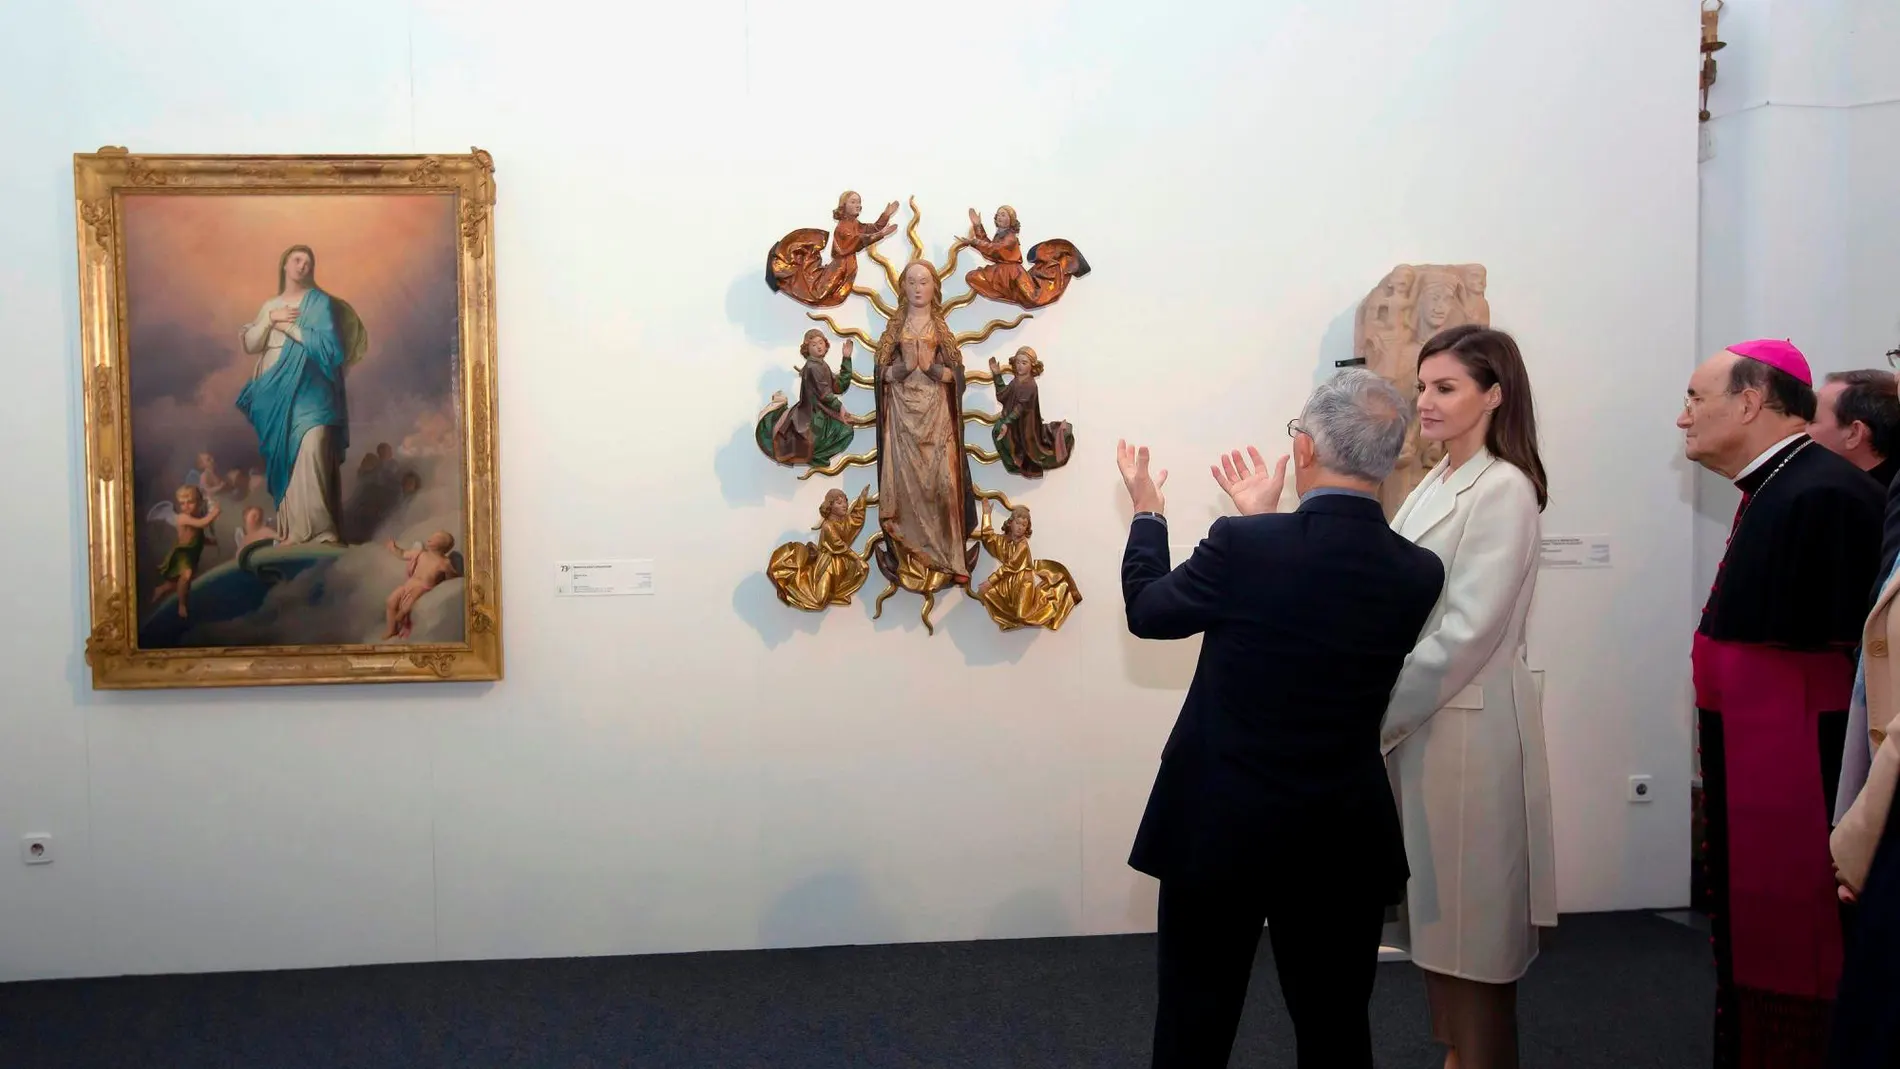 La Reina Letizia durante la inauguración de la exposición “Angeli”, en Lerma